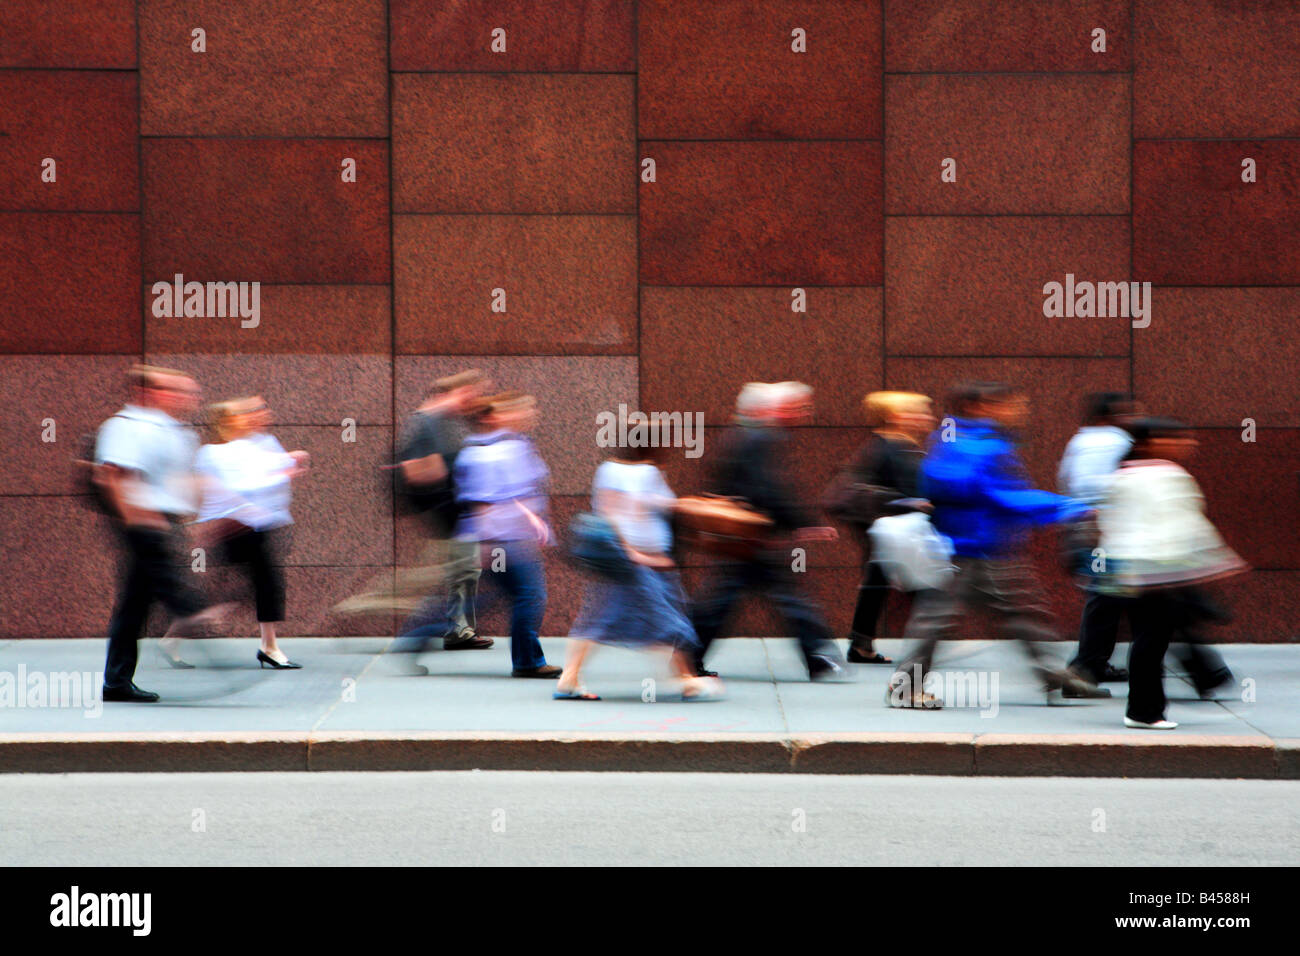 Les gens qui marchent sur ADAMS ST AU CENTRE-VILLE DE CHICAGO, ILLINOIS USA PENDANT LES HEURES DE POINTE DE L'APRÈS-MIDI Banque D'Images